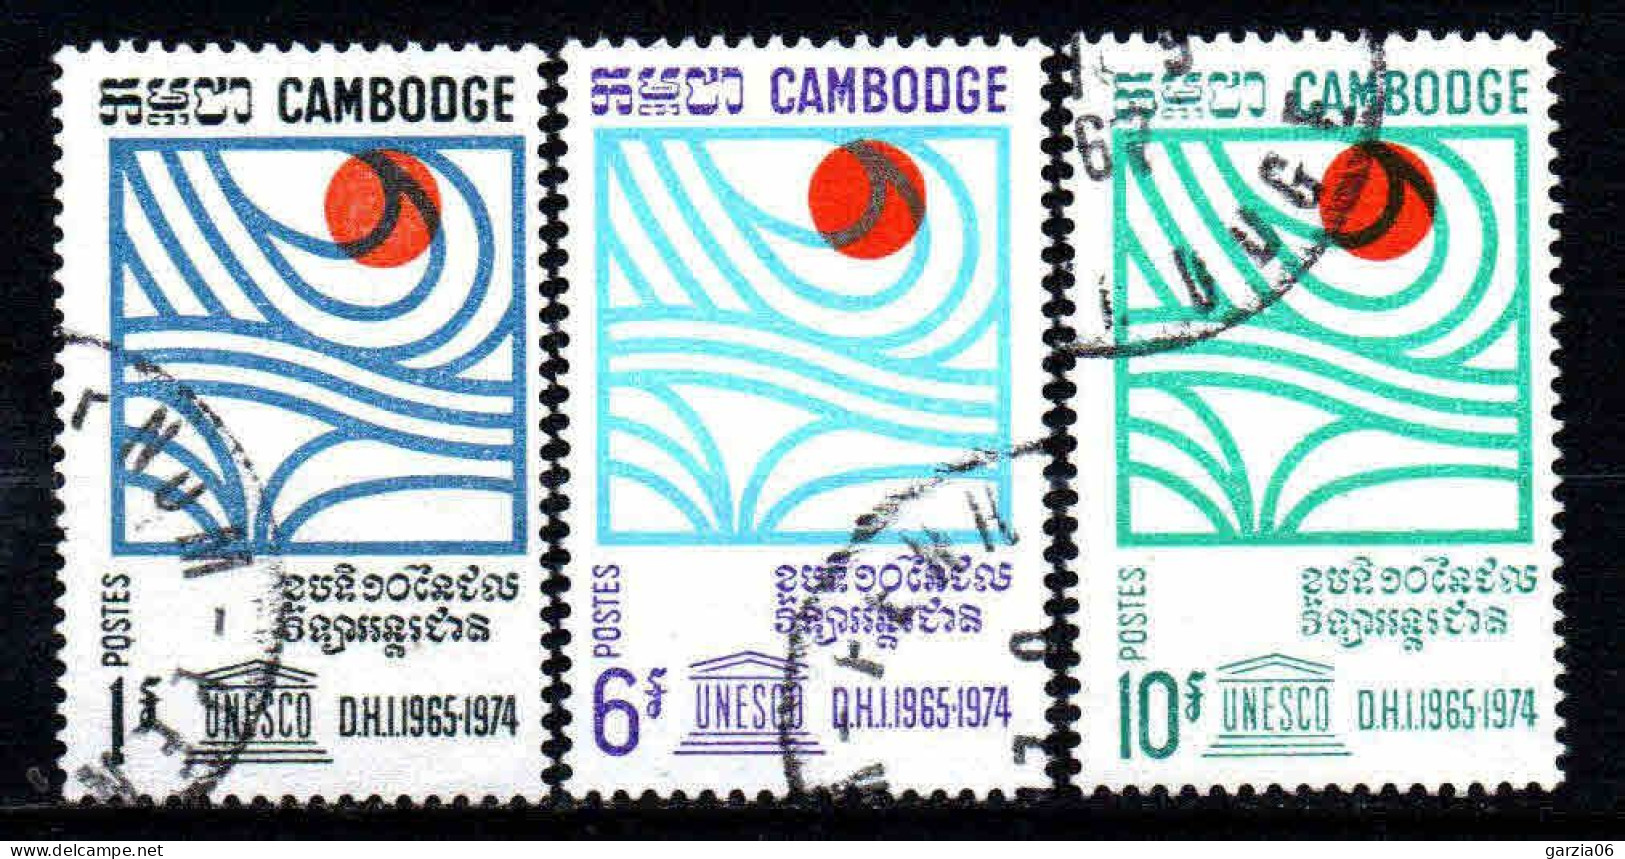 Cambodge - 1967  - Hydrologie  - N° 200 à 202    -  Oblit - Used - Cambodia